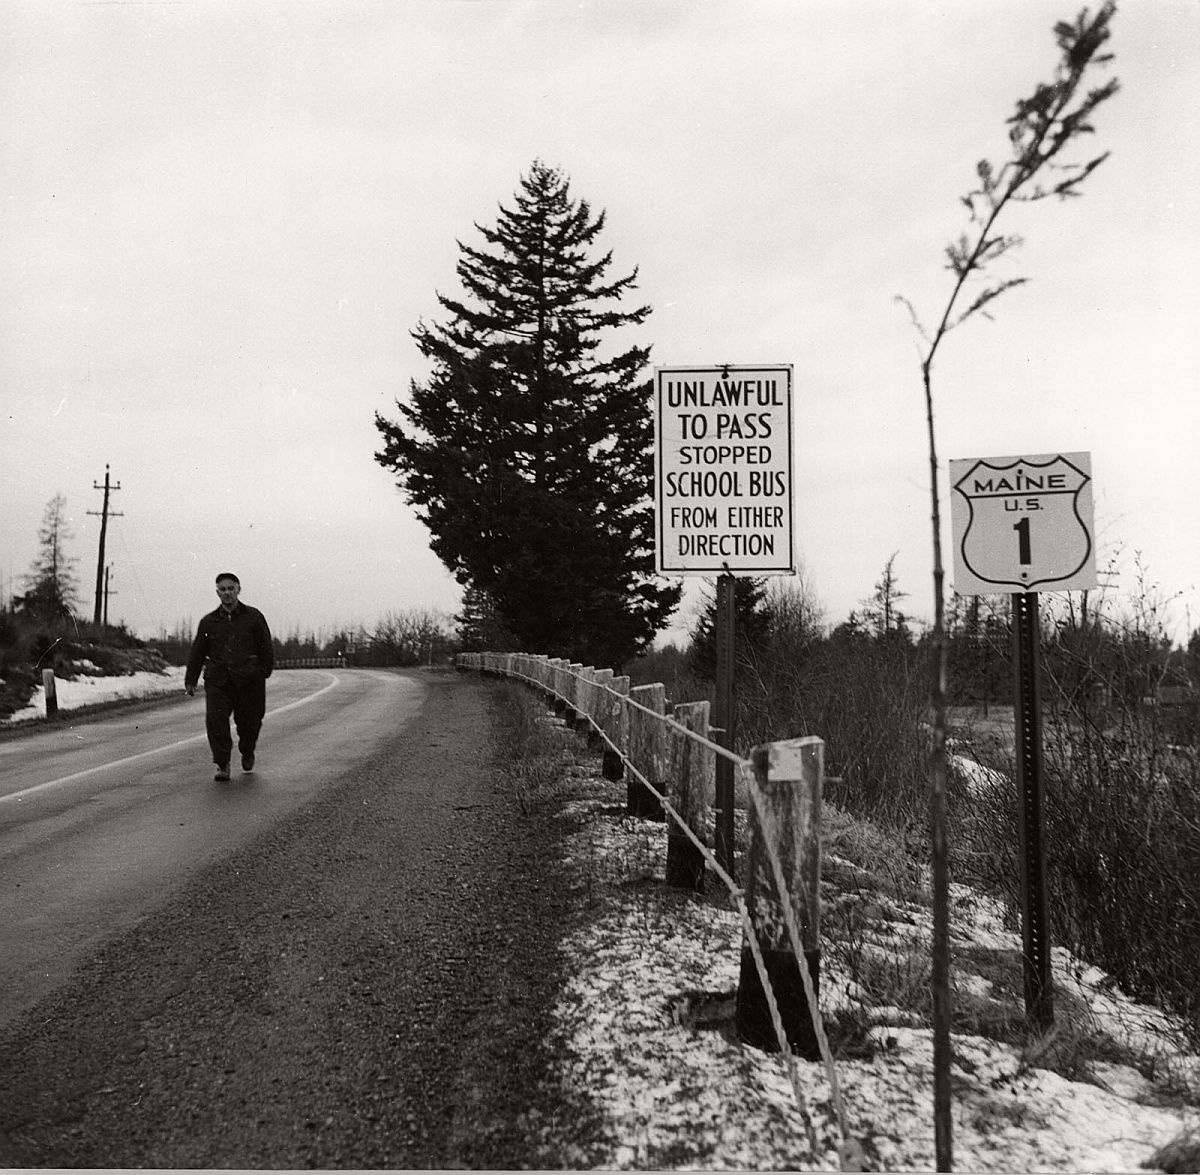 Roadsign, Route 1, Maine, 1954 by Berenice Abbott